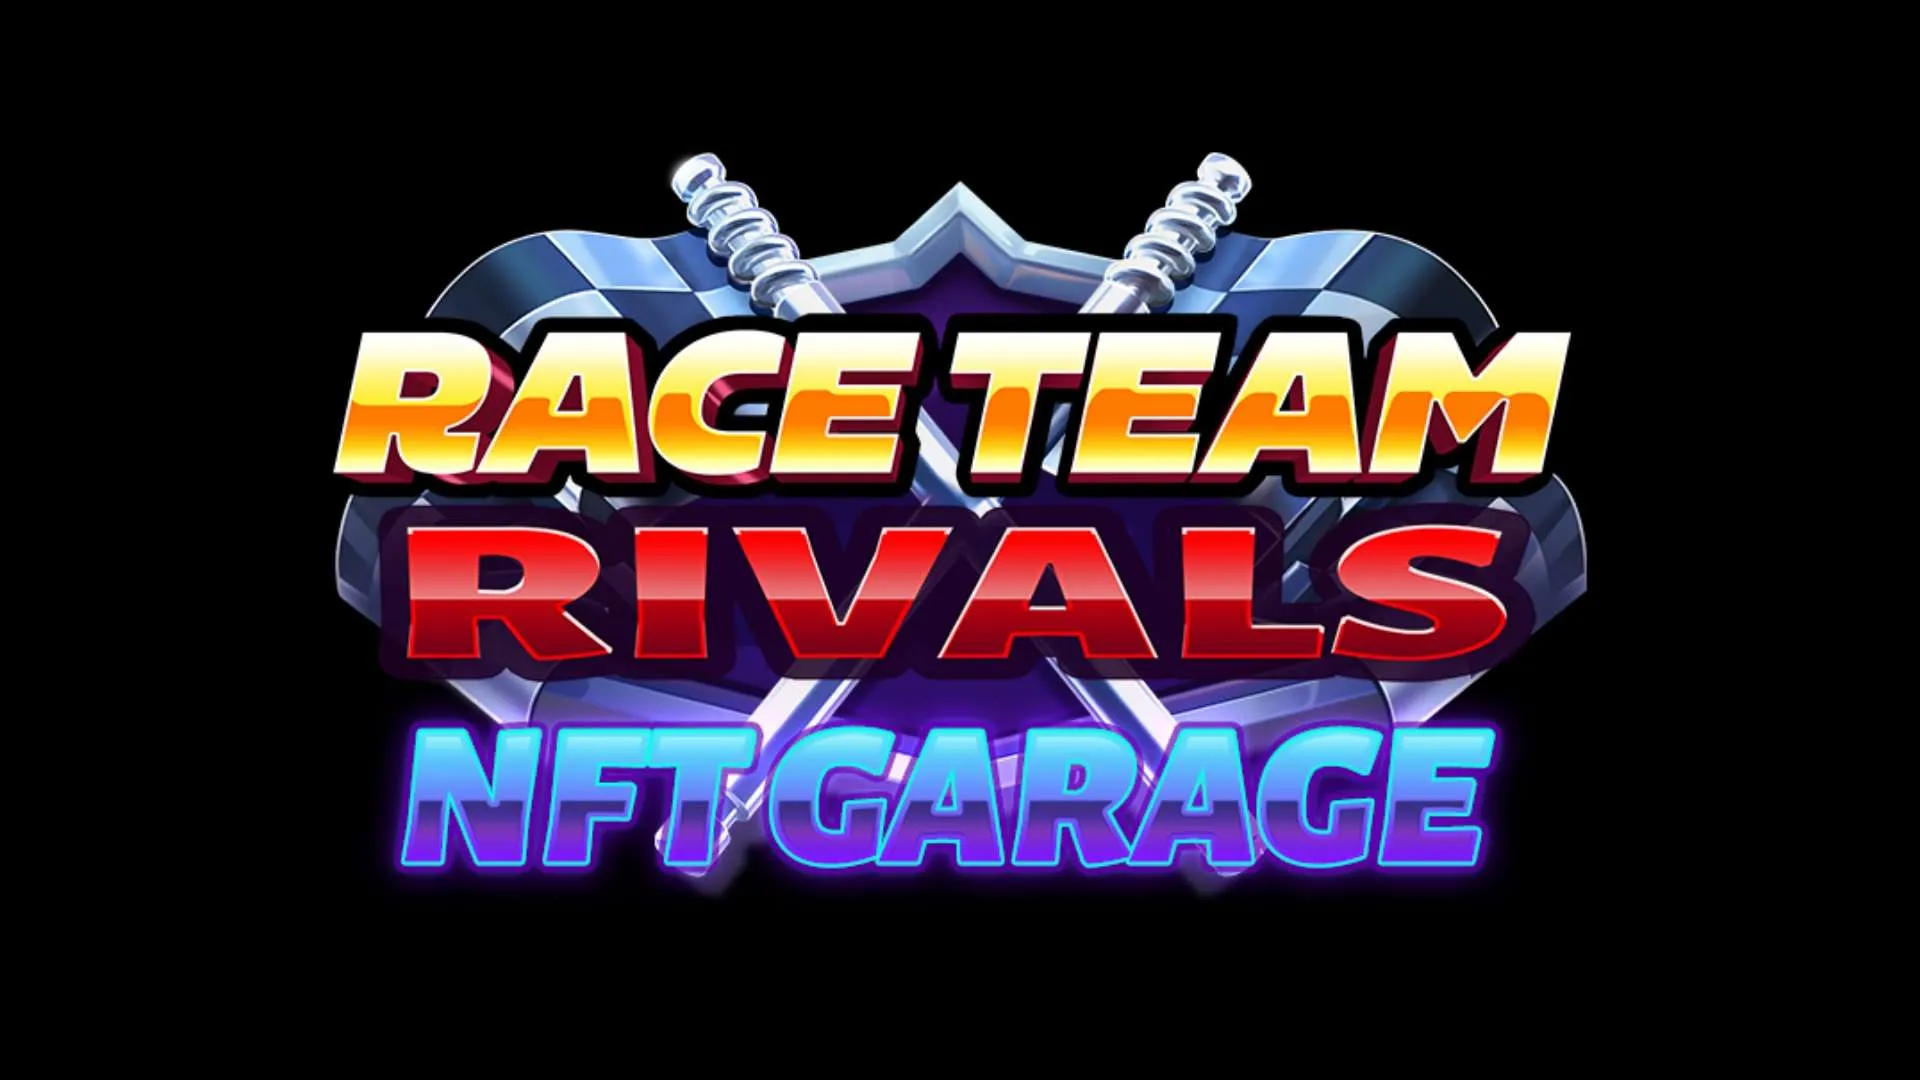 Race Team Rivals NFT Garage